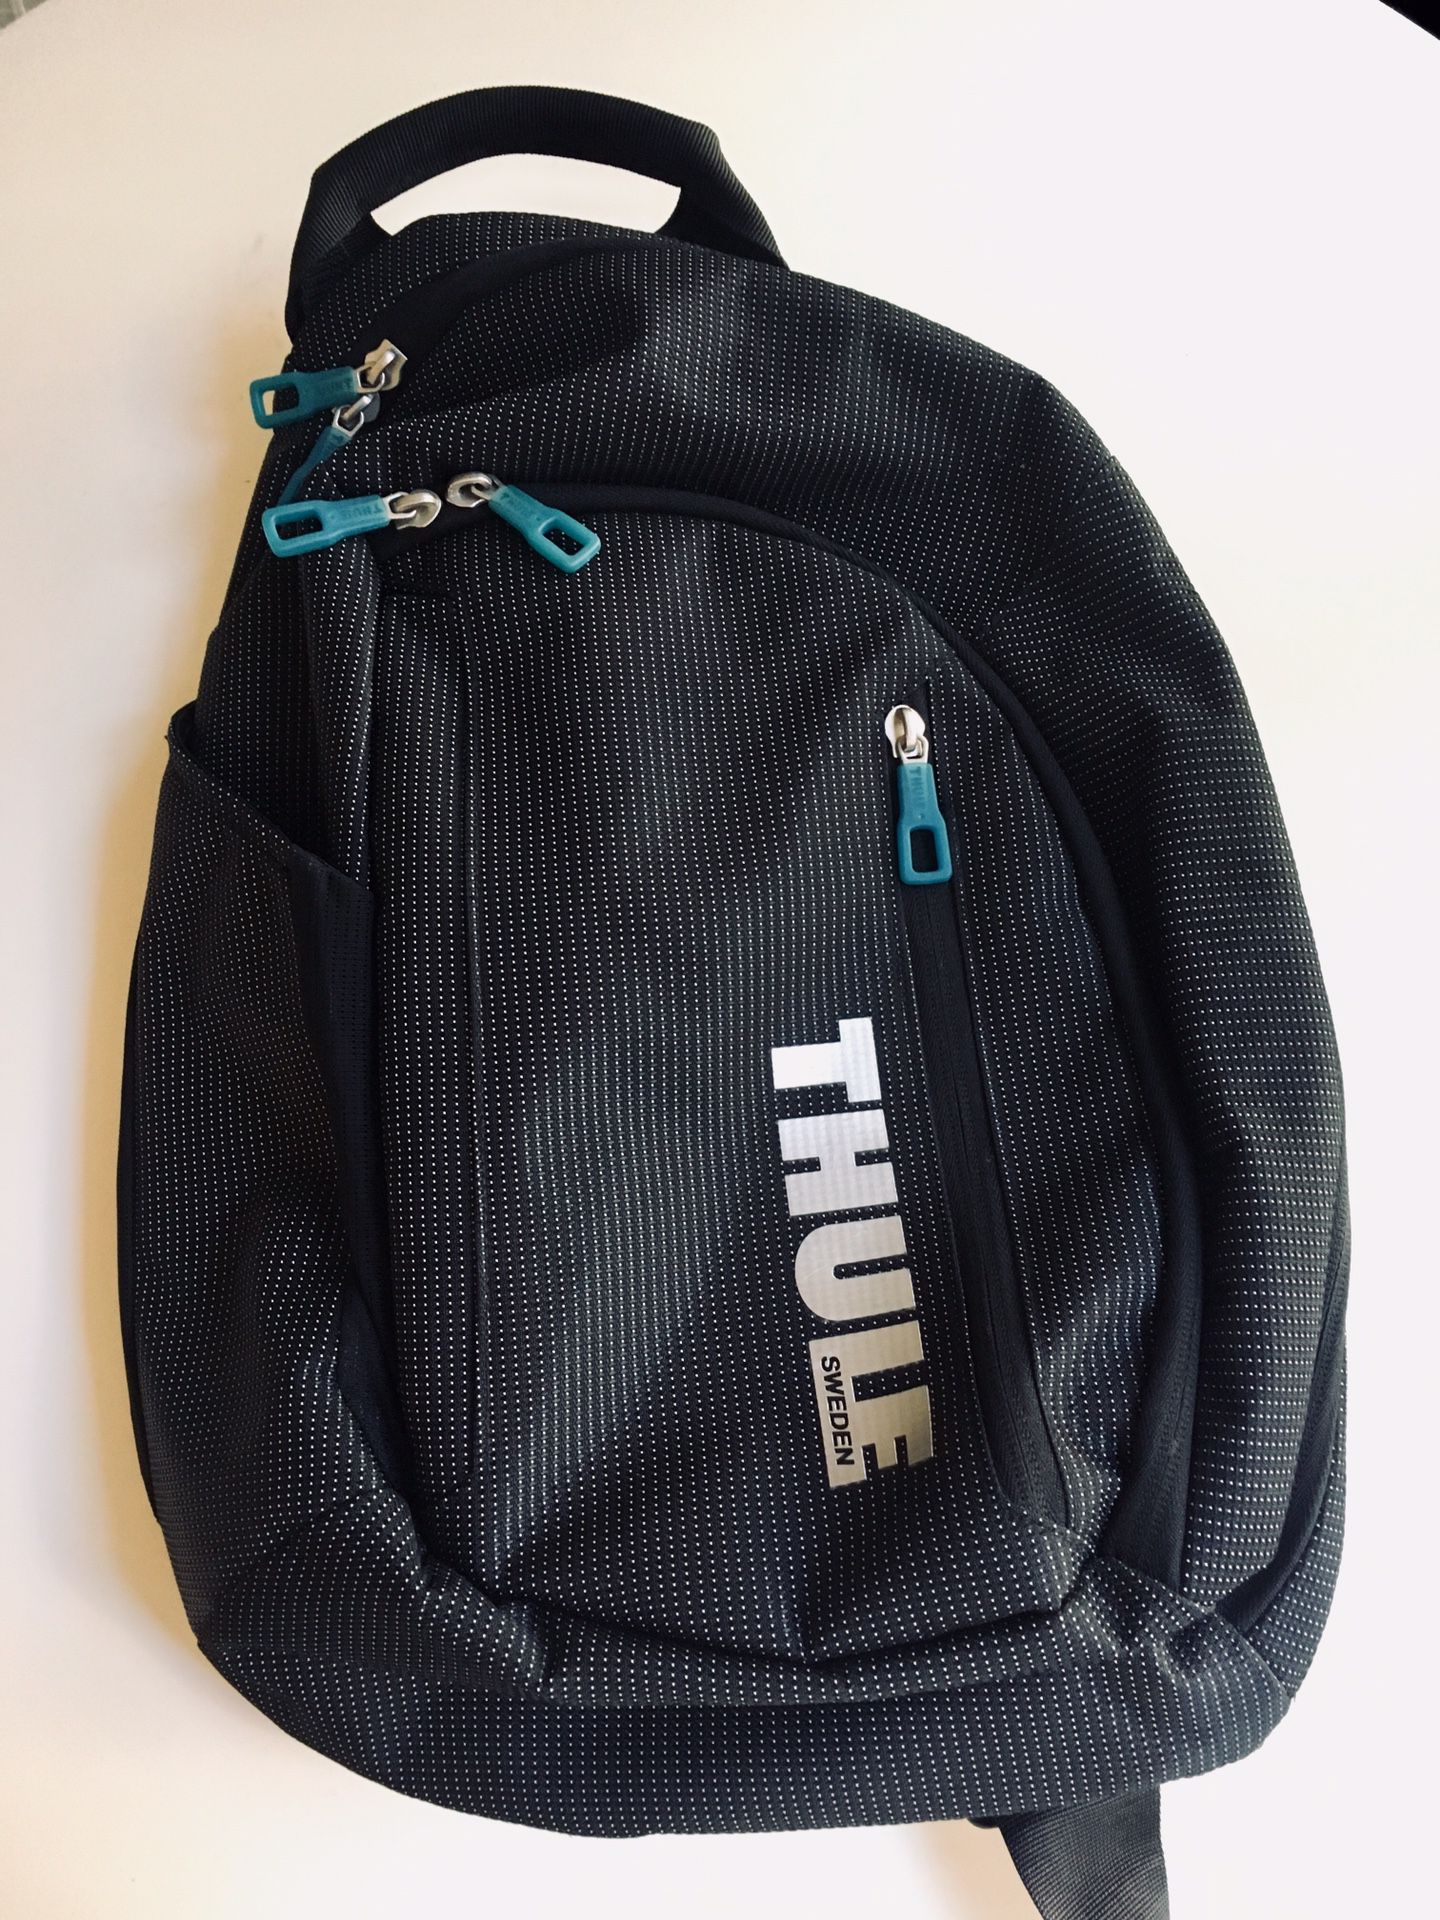 NEW Thule Bike / Messenger Bag